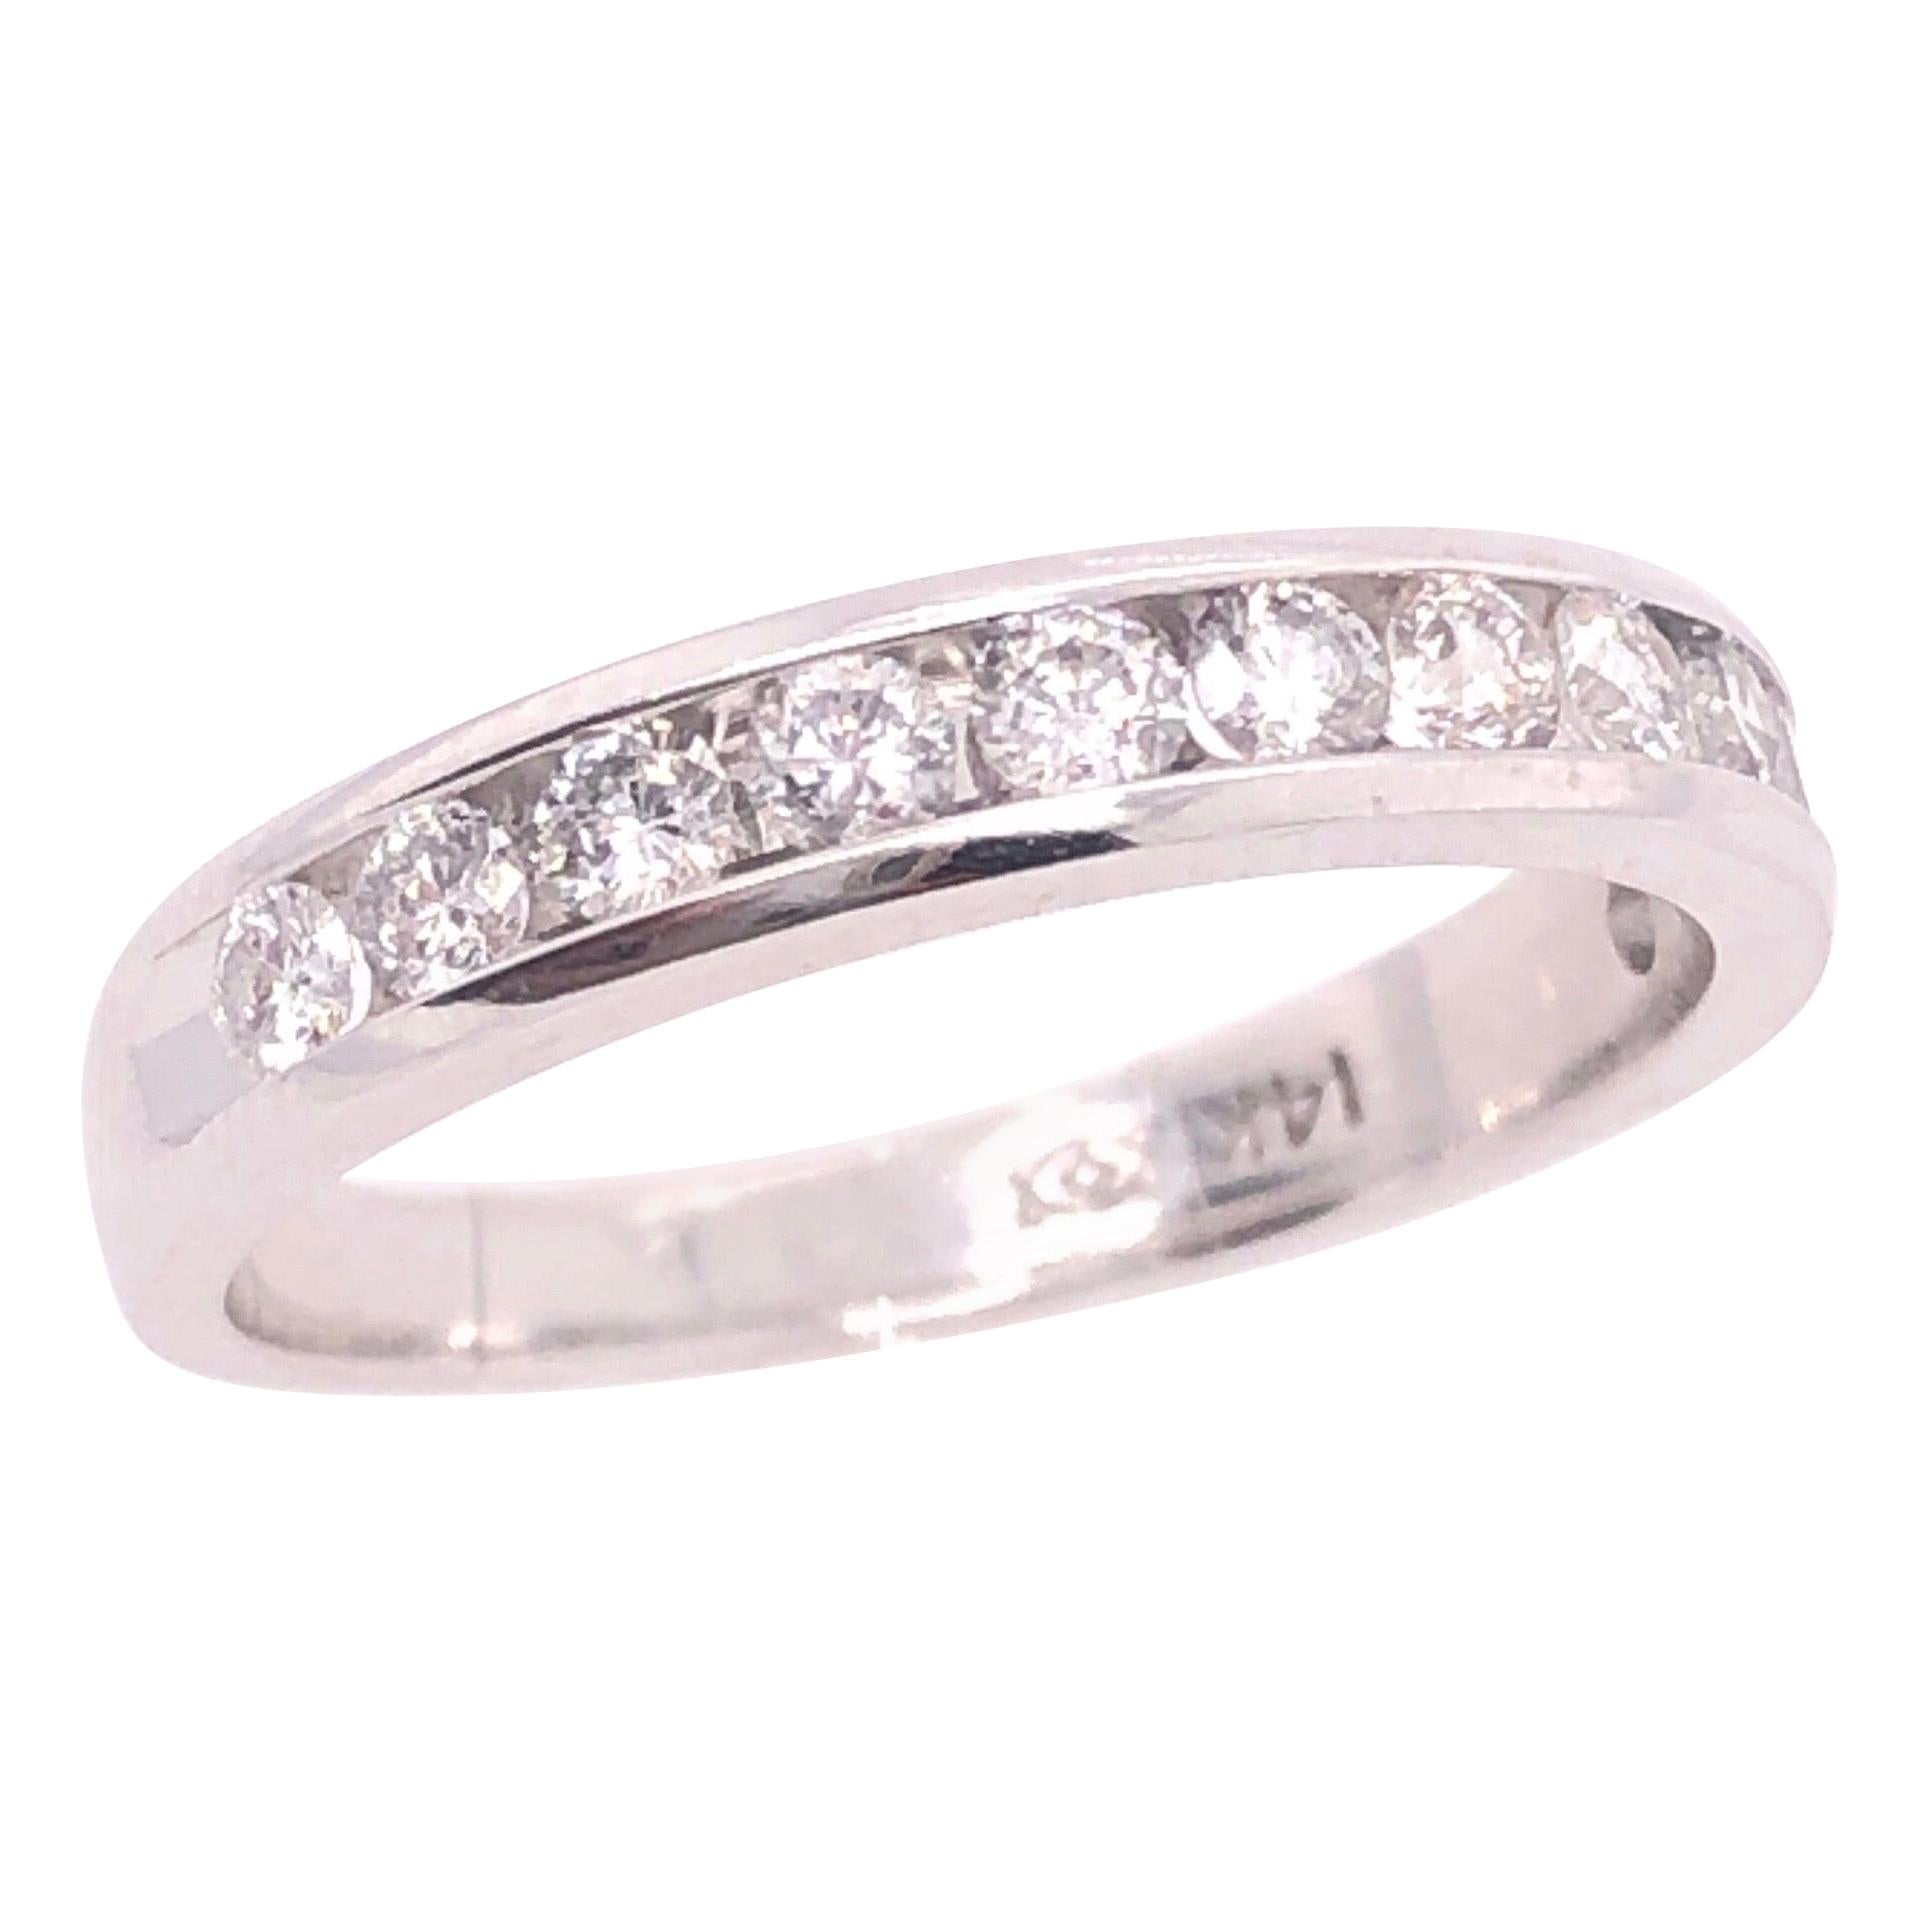 14 Karat White Gold and Diamond Band Bridal Wedding Ring